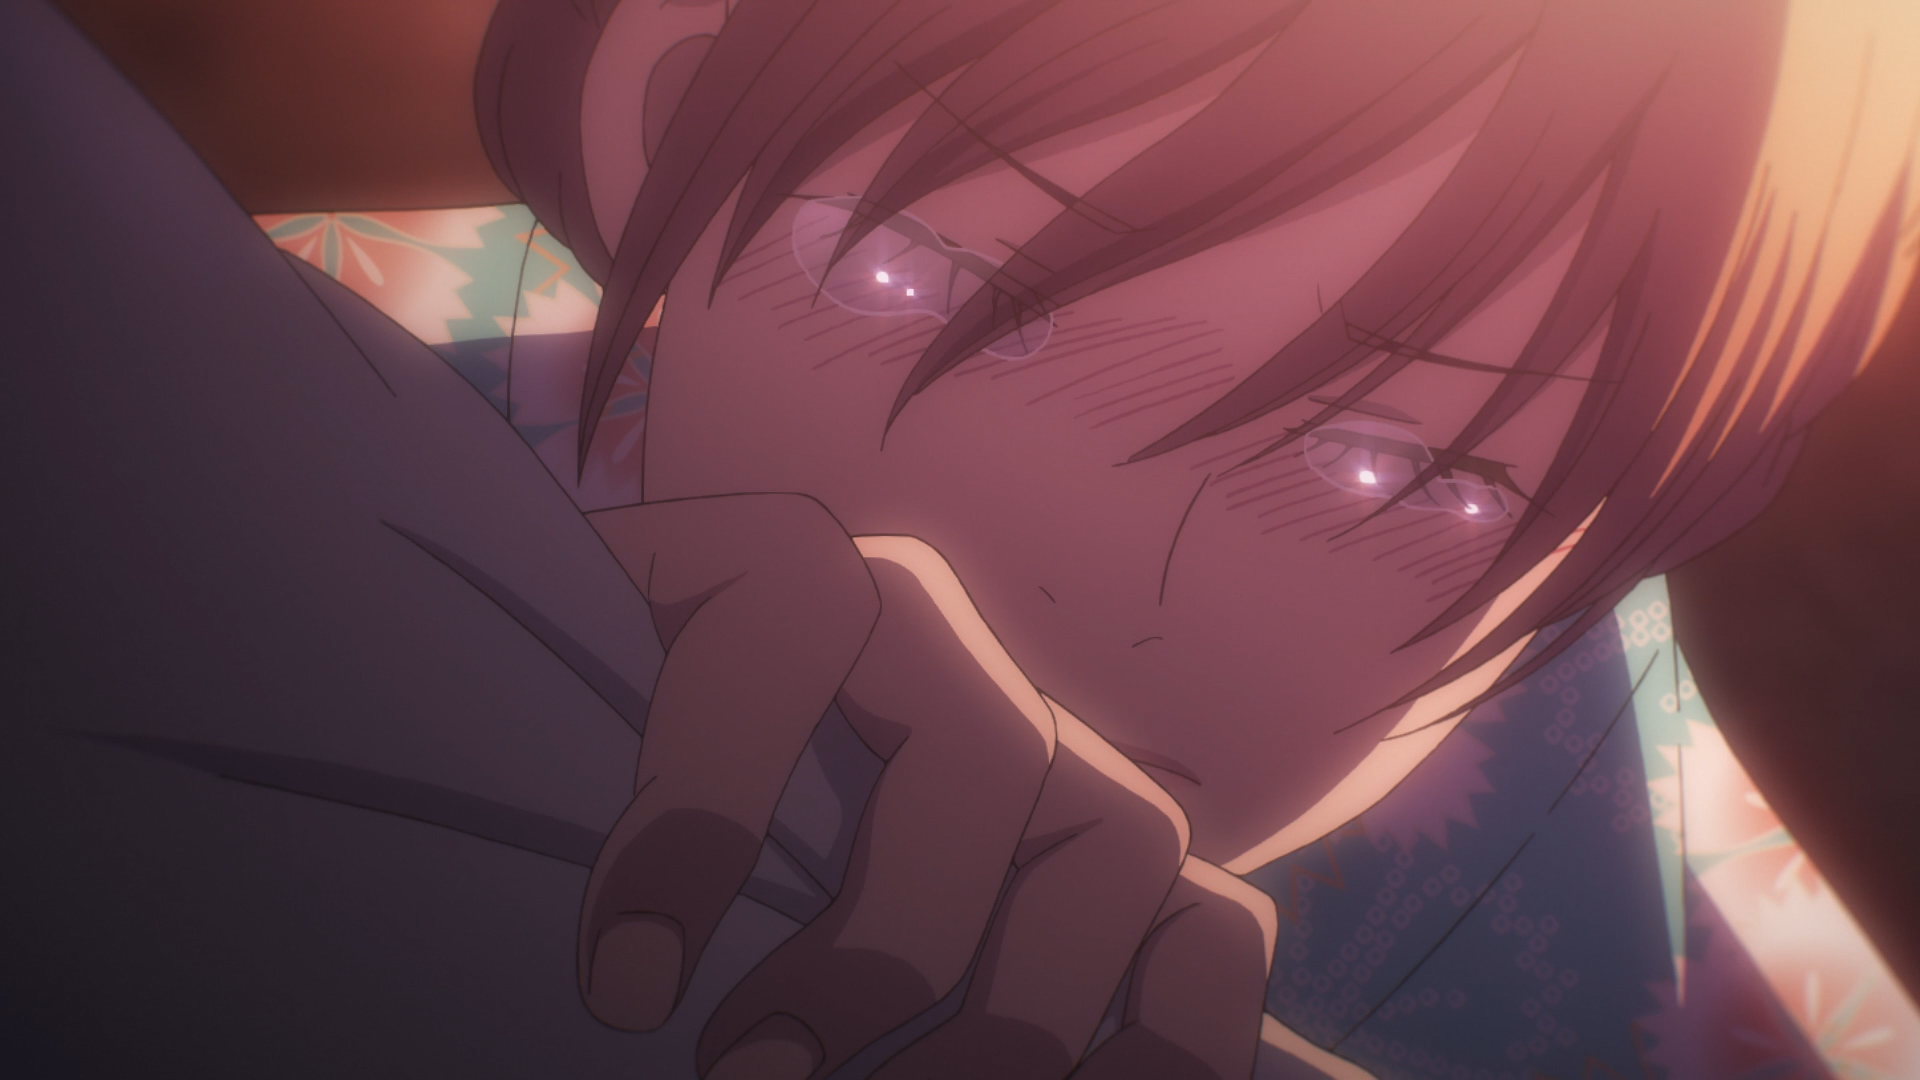 Chihayafuru 3x23 - Taichi confesses his love to Chihaya